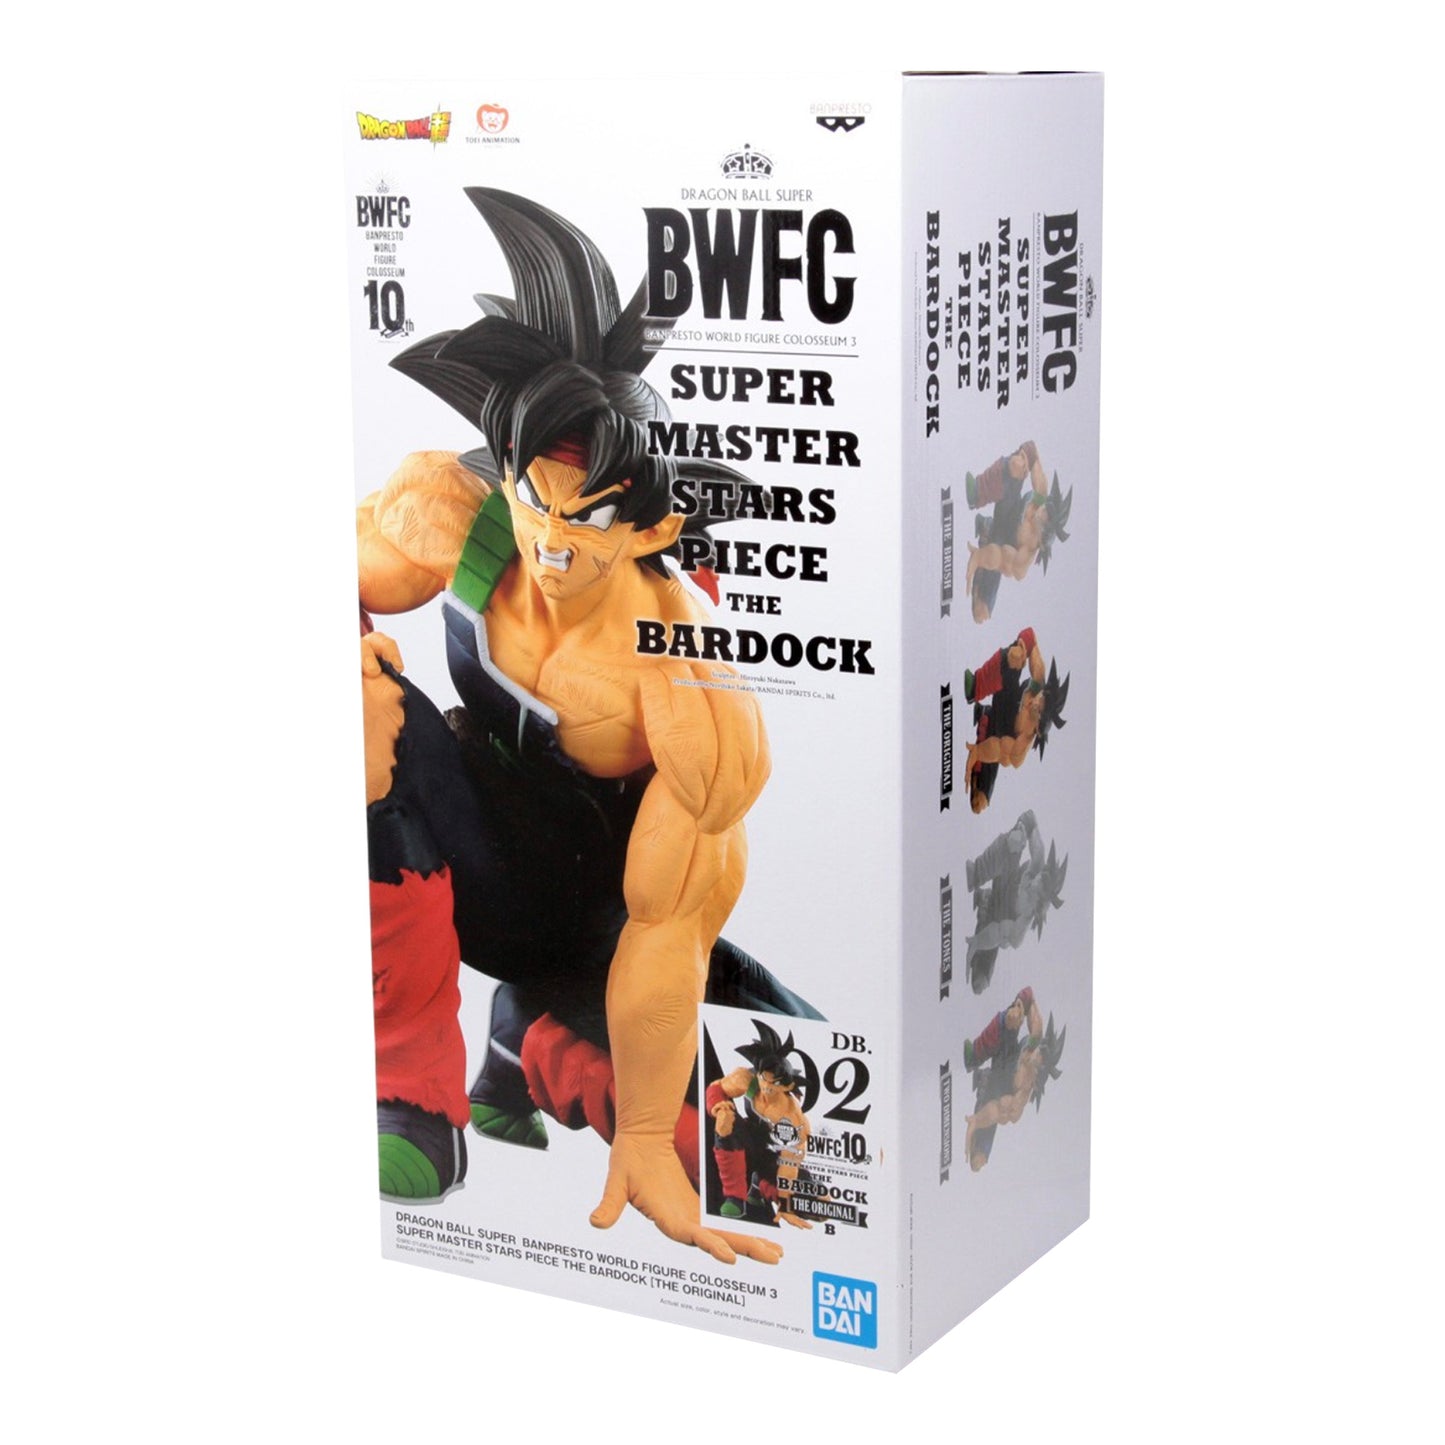 Banpresto x Bandai: Dragon Ball Super - World Figure Colosseum 3 Super Master Stars Piece The Bardock Original Ver. Figure